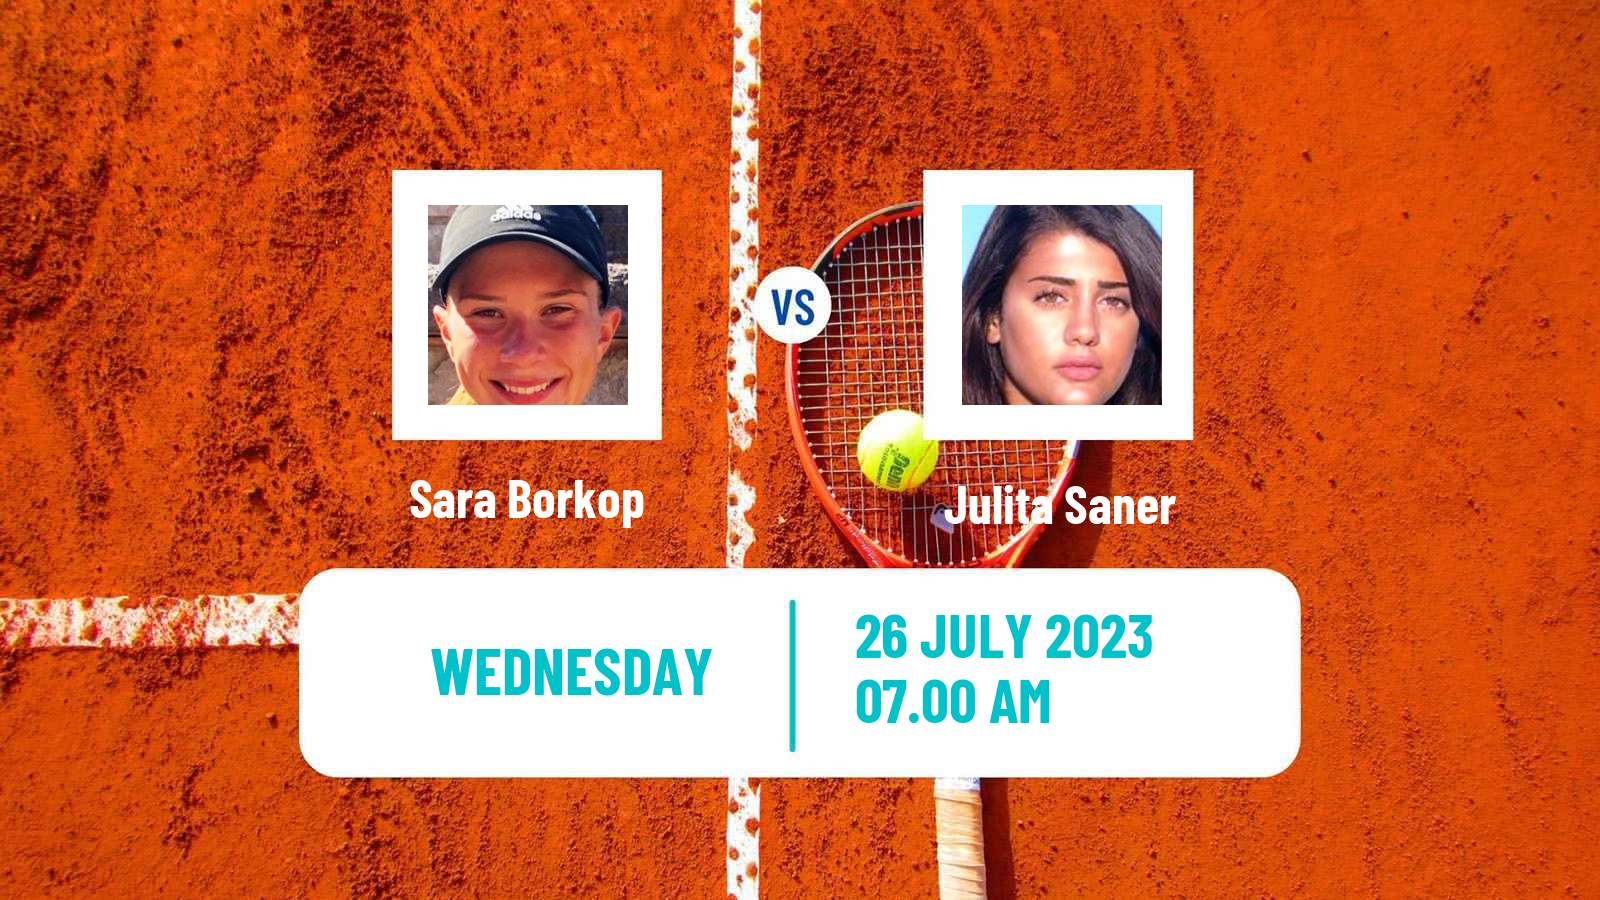 Tennis ITF W15 Vejle Women Sara Borkop - Julita Saner